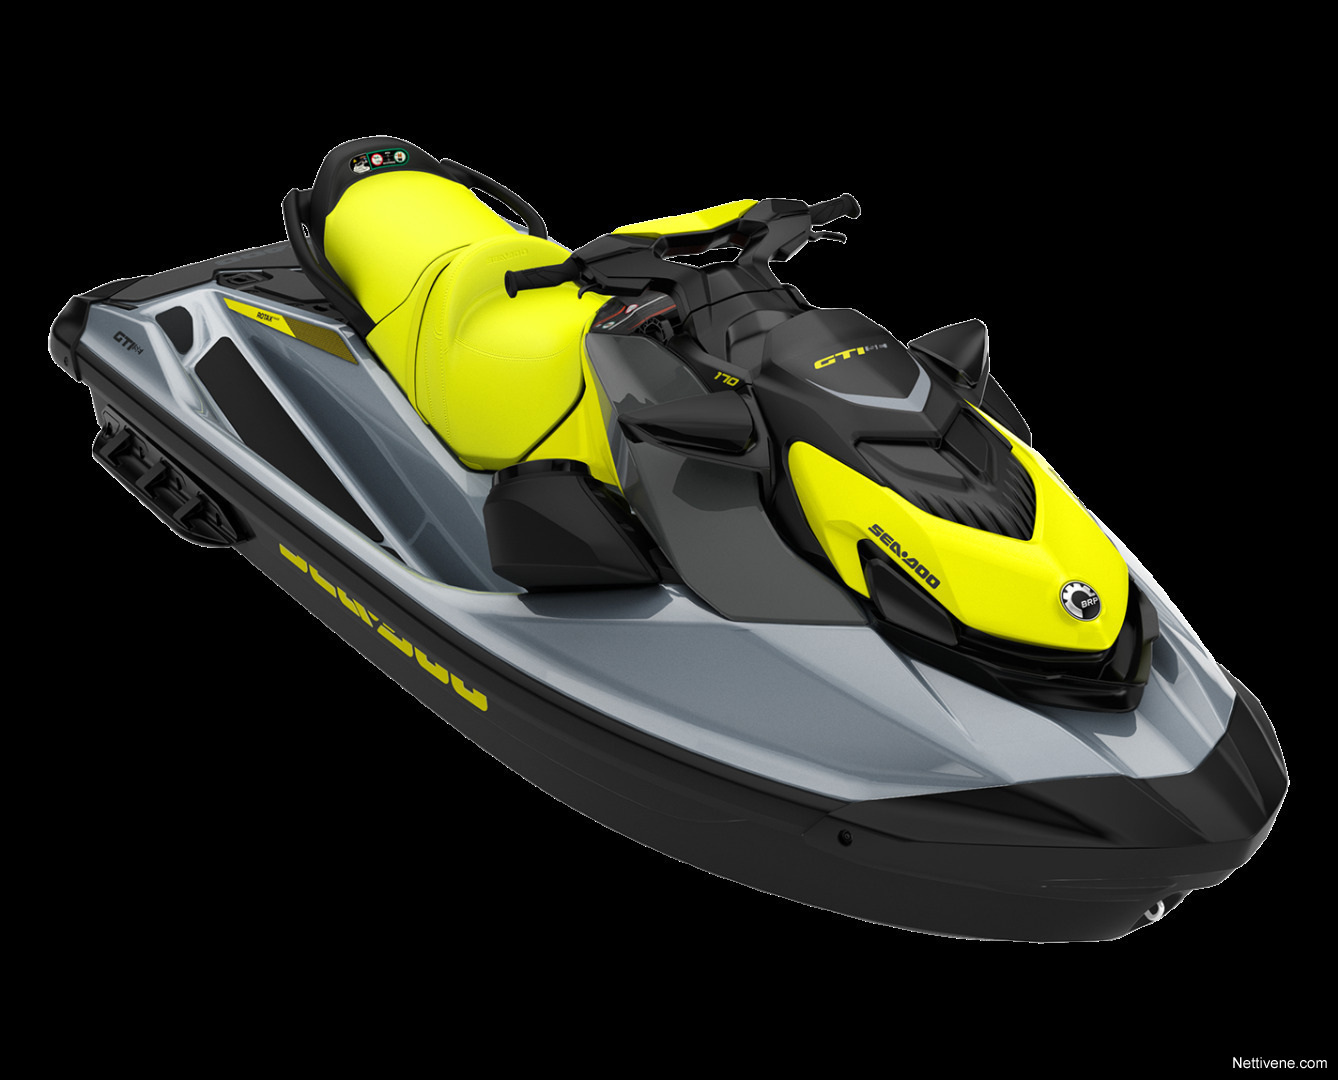 Seadoo GTI SE 170 iBR watercraft 2022 Kotka Nettivene